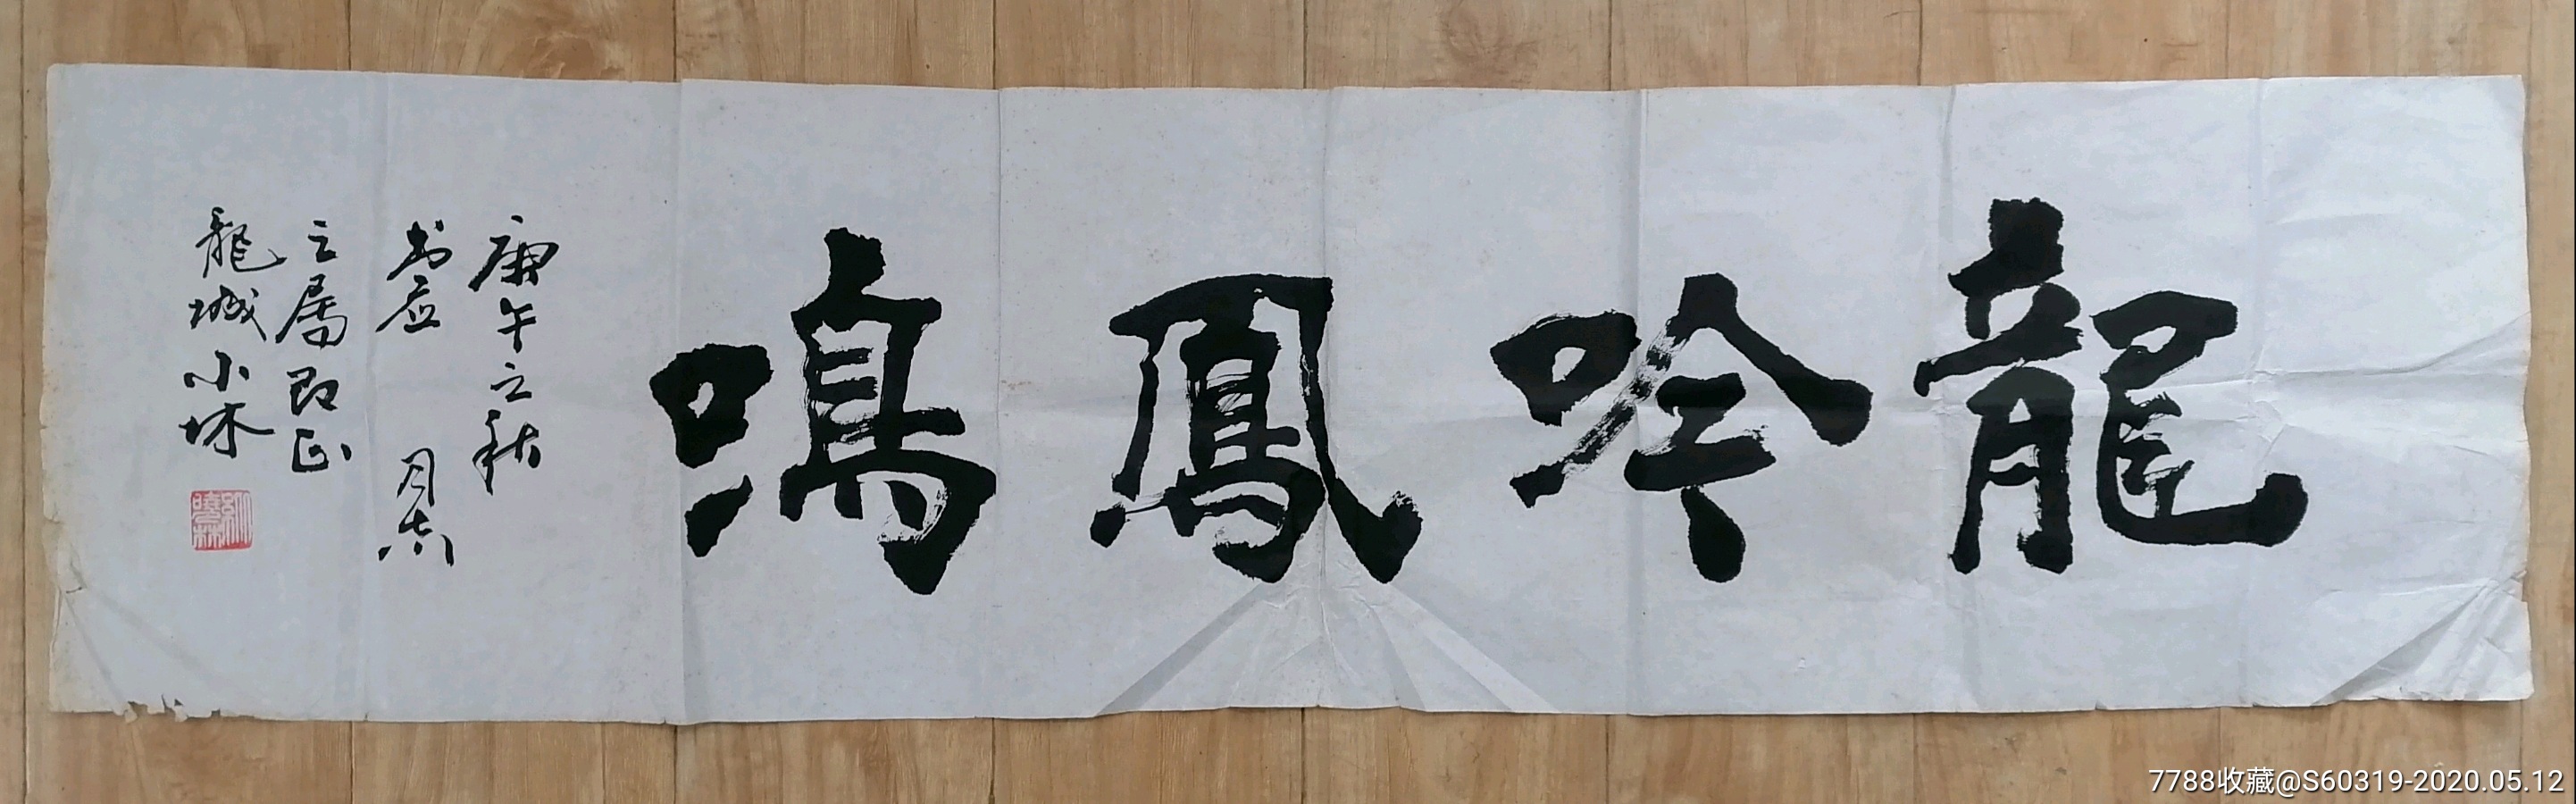 纵晓林书法作品(4尺条横幅)